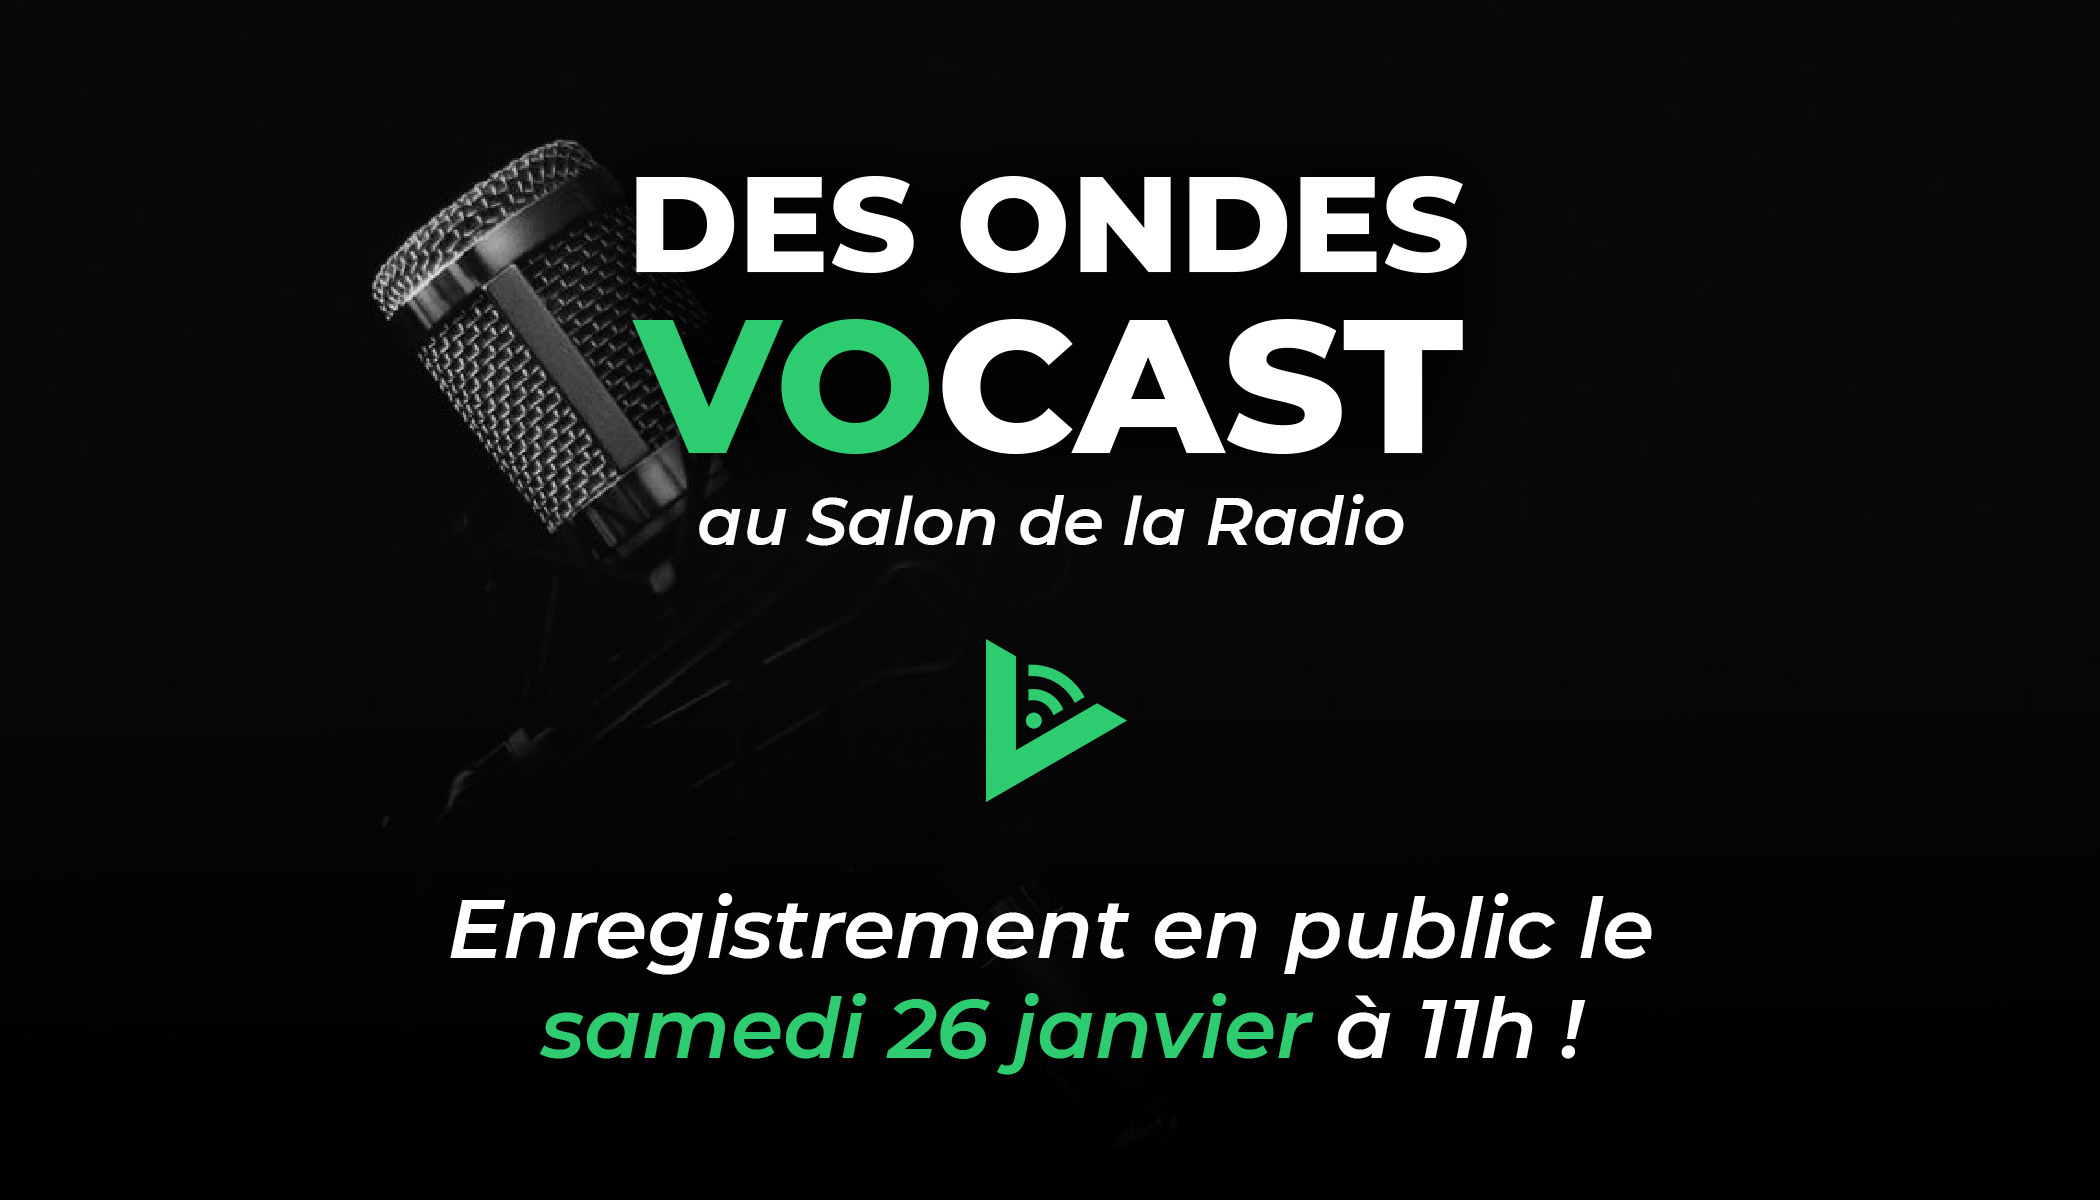 "Des ondes Vocast" au Salon de la Radio